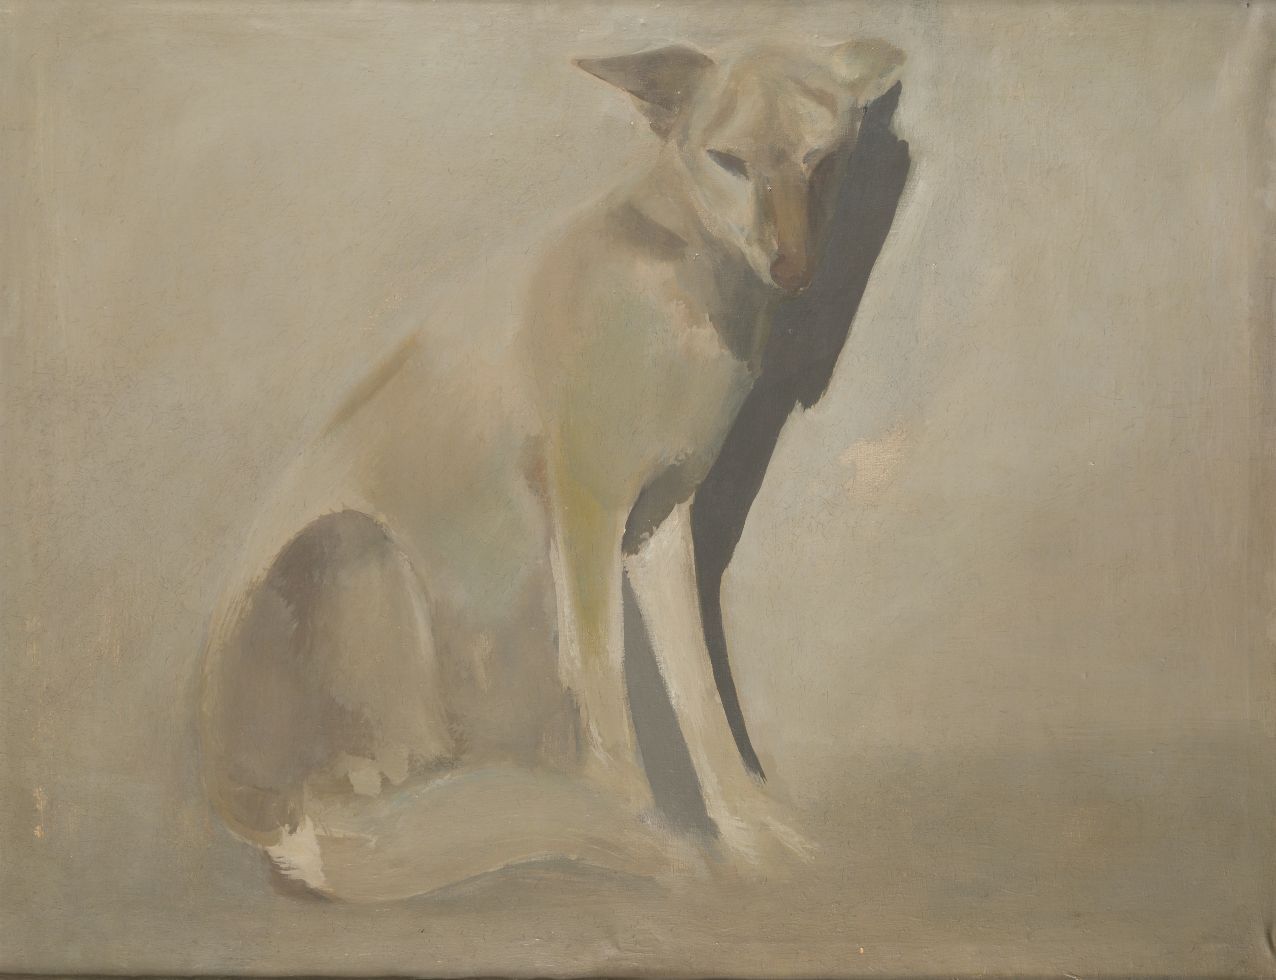 CONSTANTINO GRANDIO (1926 / 1977) "Dog" Oil on canvas. 90 x 116 cm